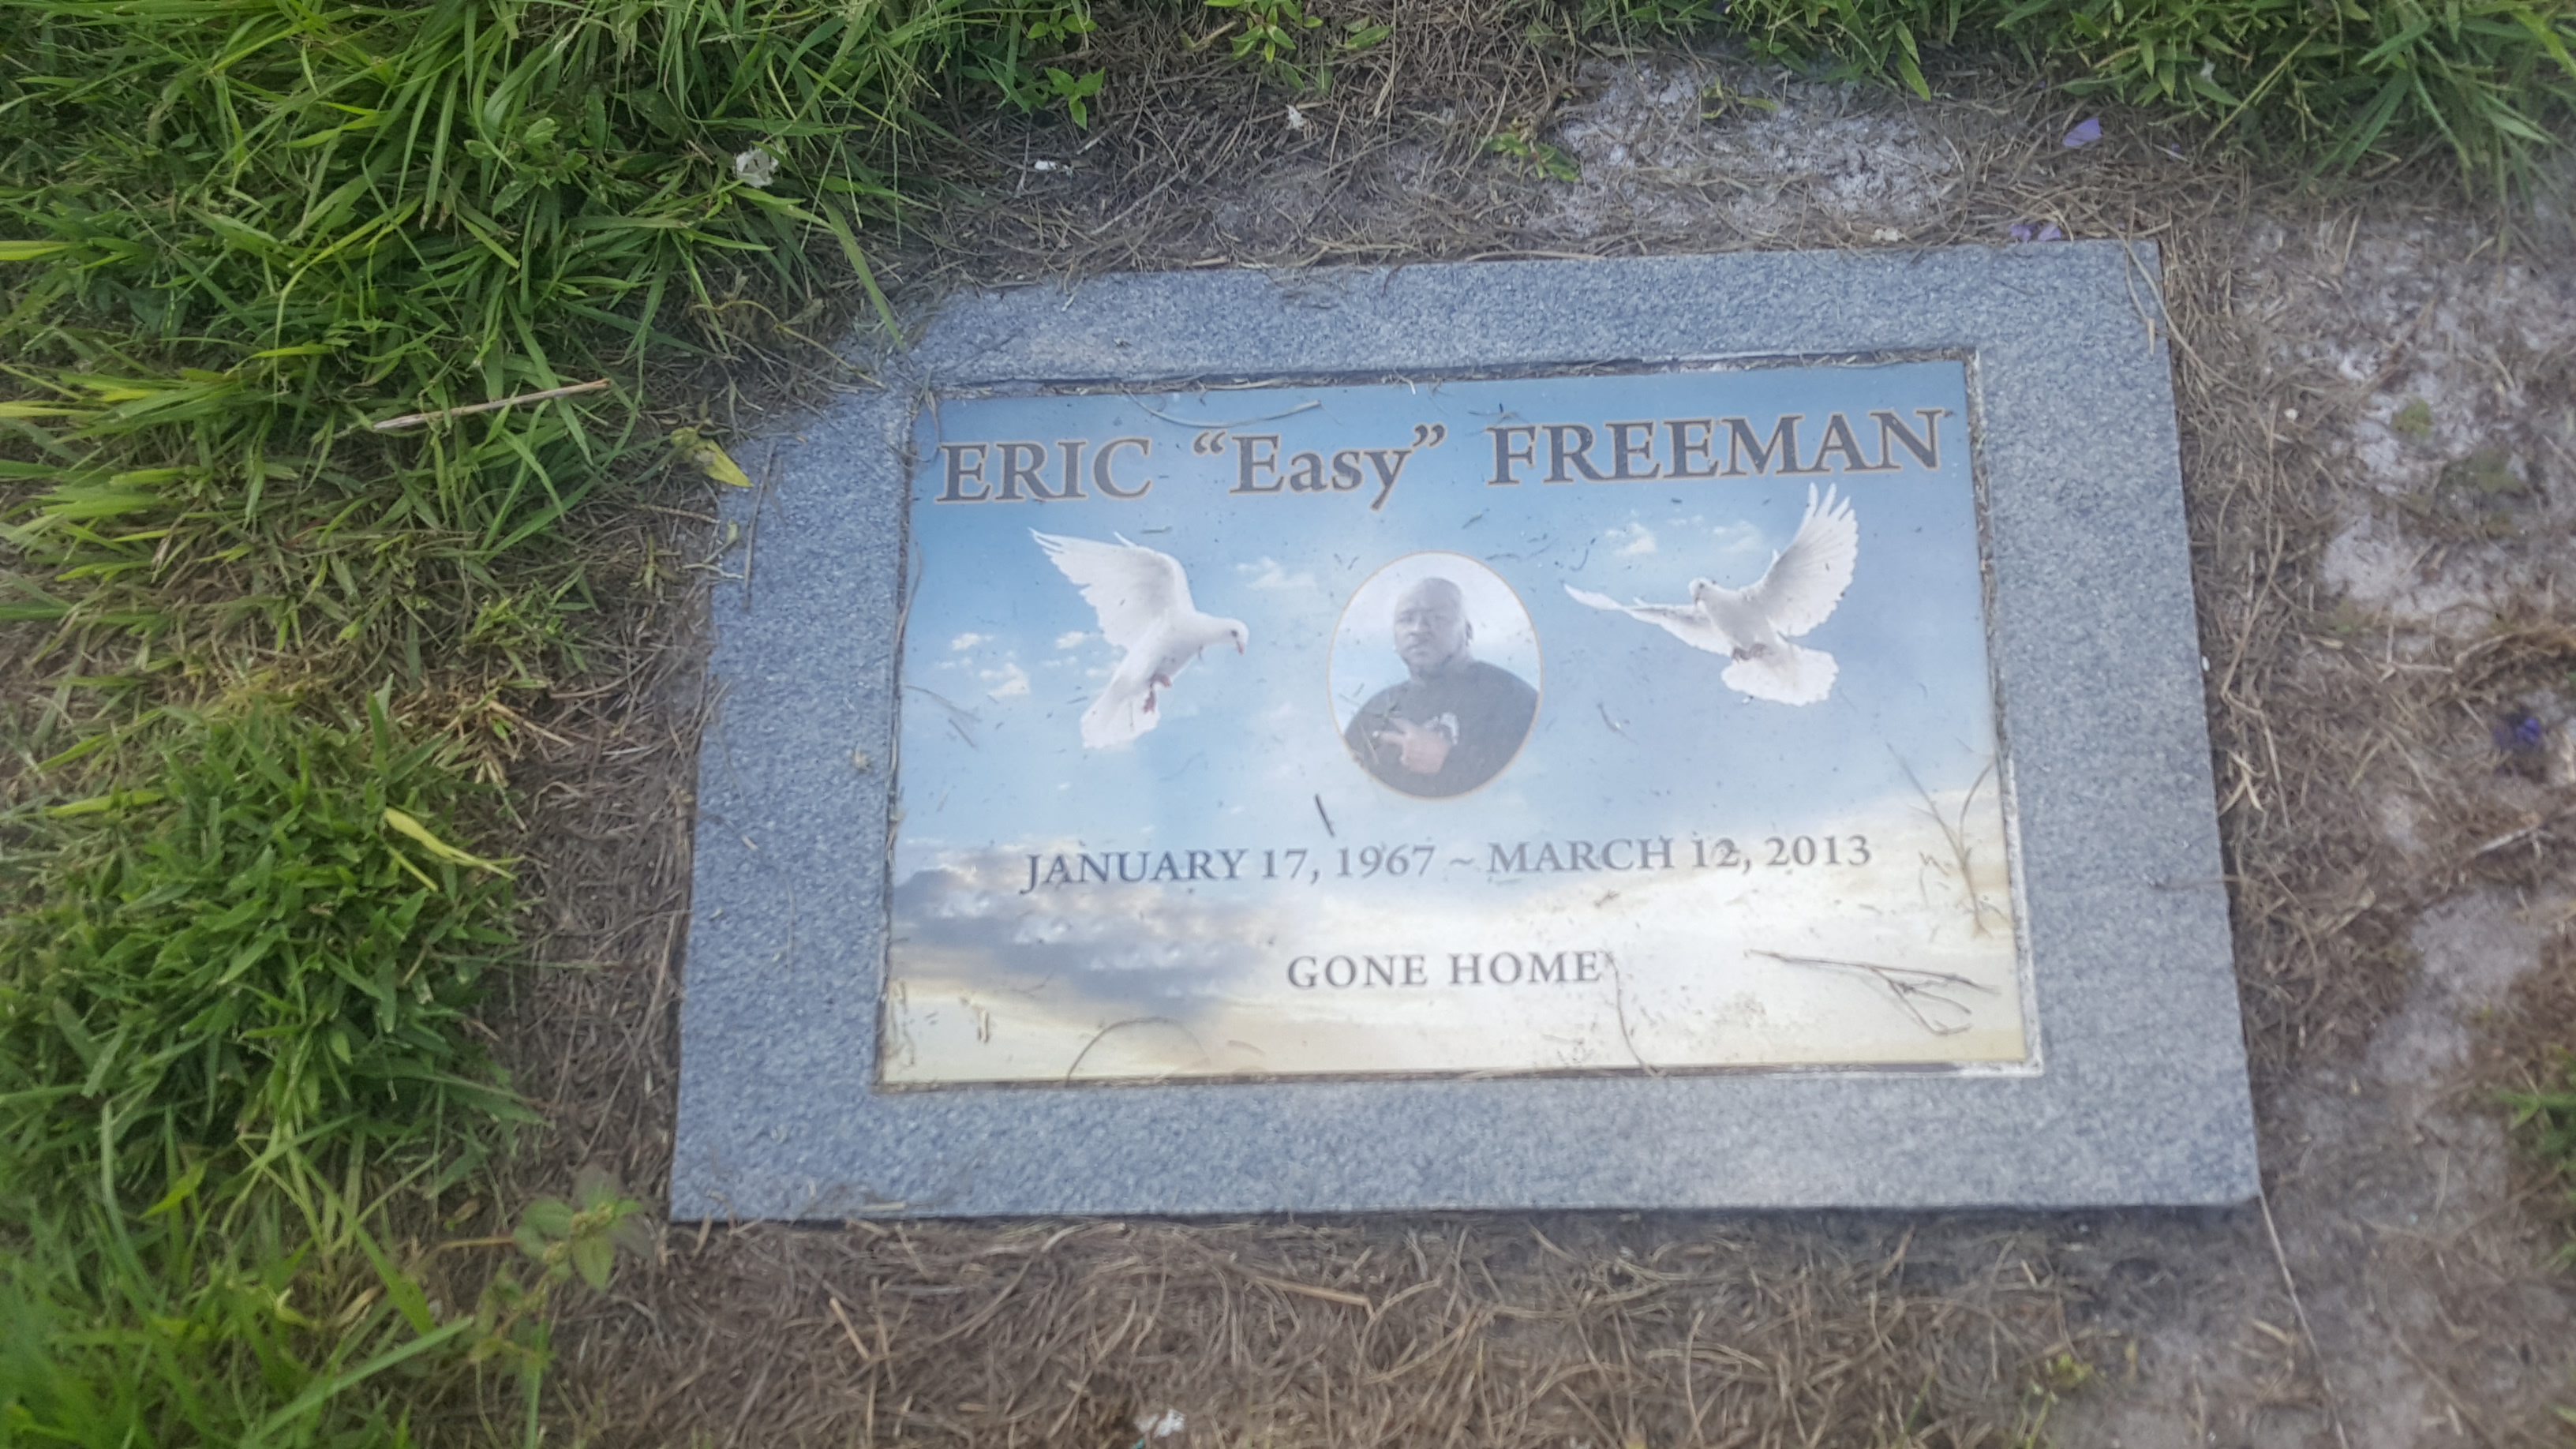 Eric "Easy" Freeman